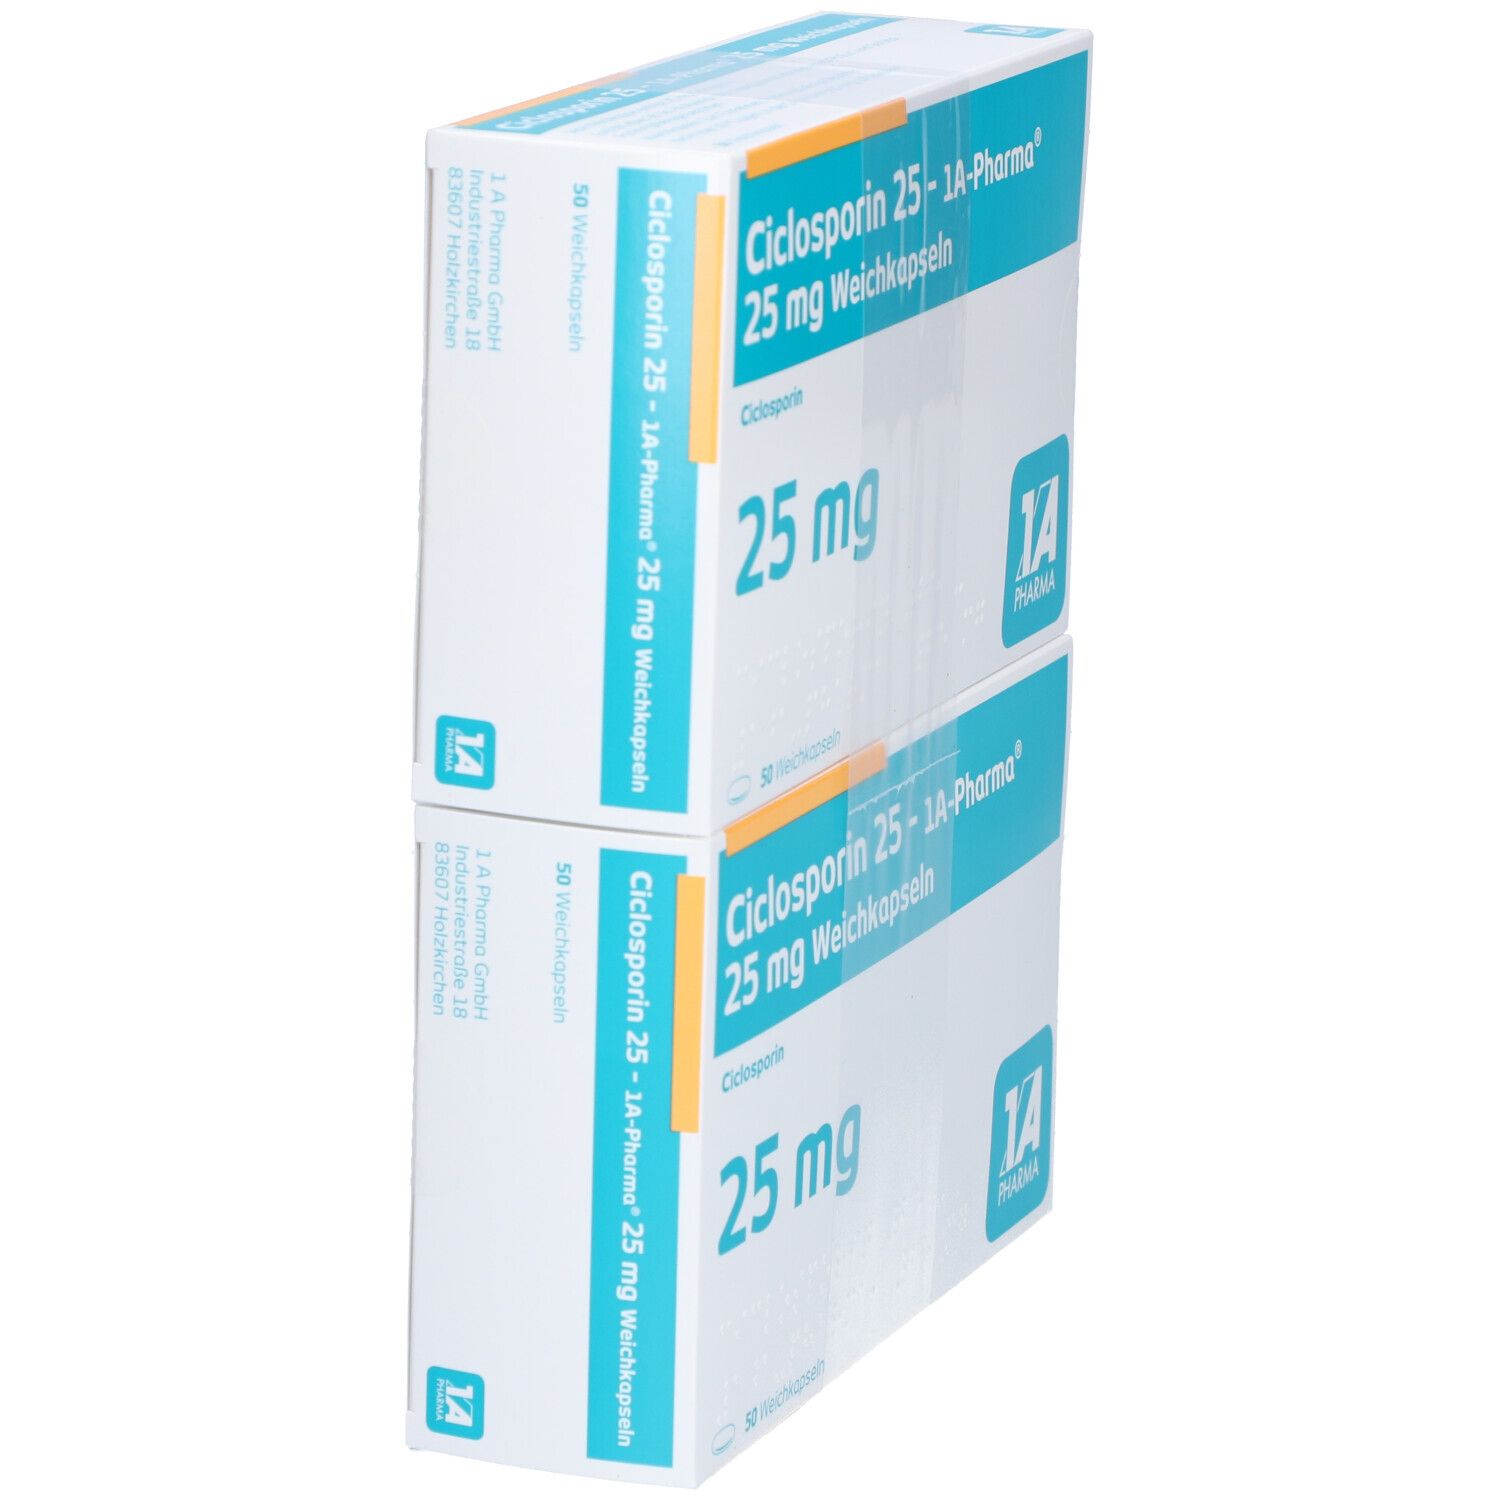 Ciclosporin 25 1A Pharma®